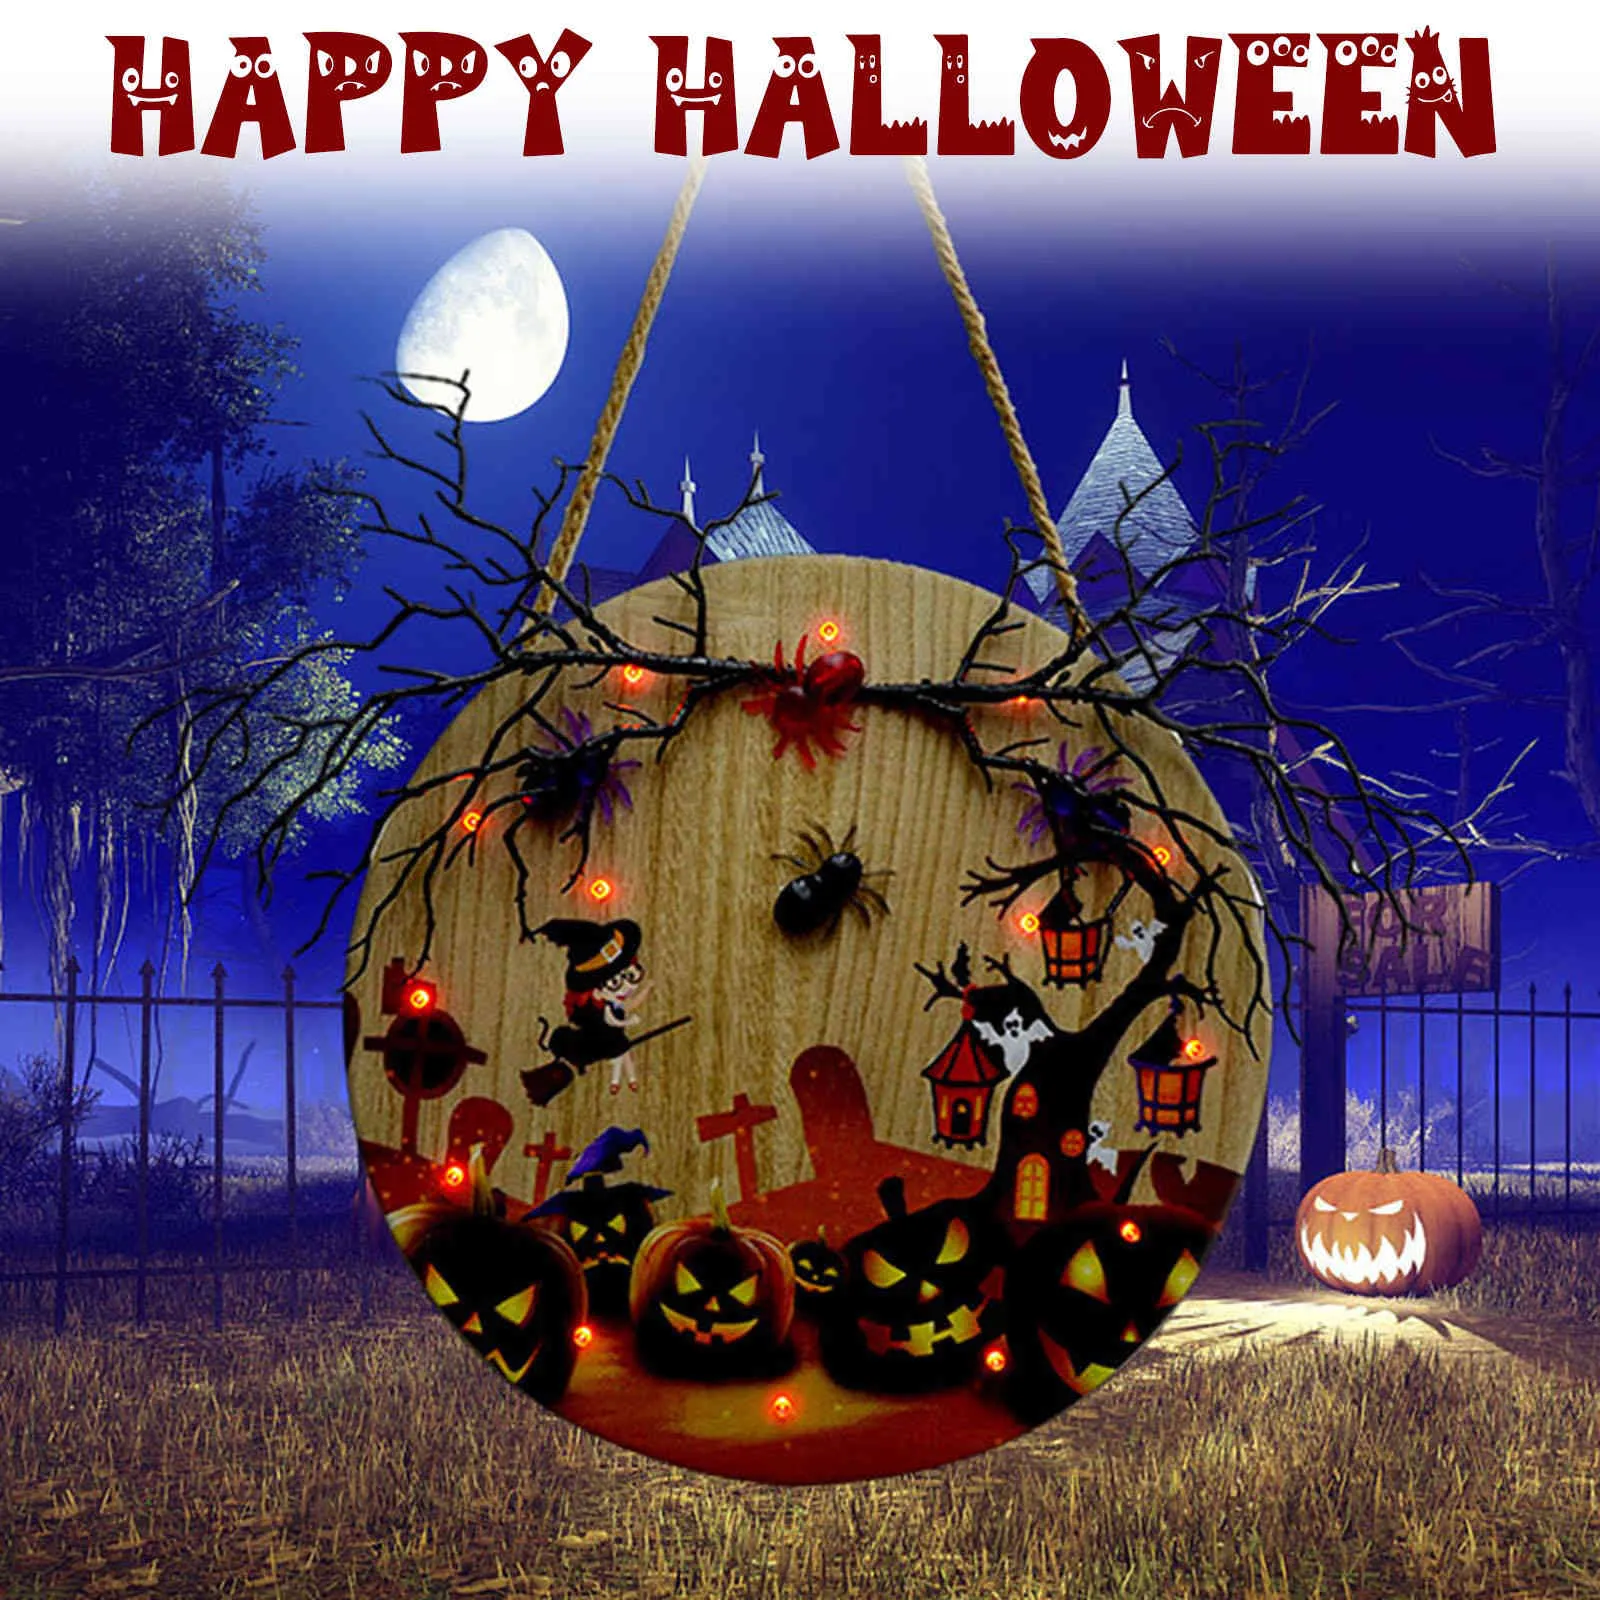 Halloween-Dekoration, Holzplatte mit Licht, für Party, Urlaub, Türbehang, Geisterschloss, Hexe, Heim-Wanddekoration